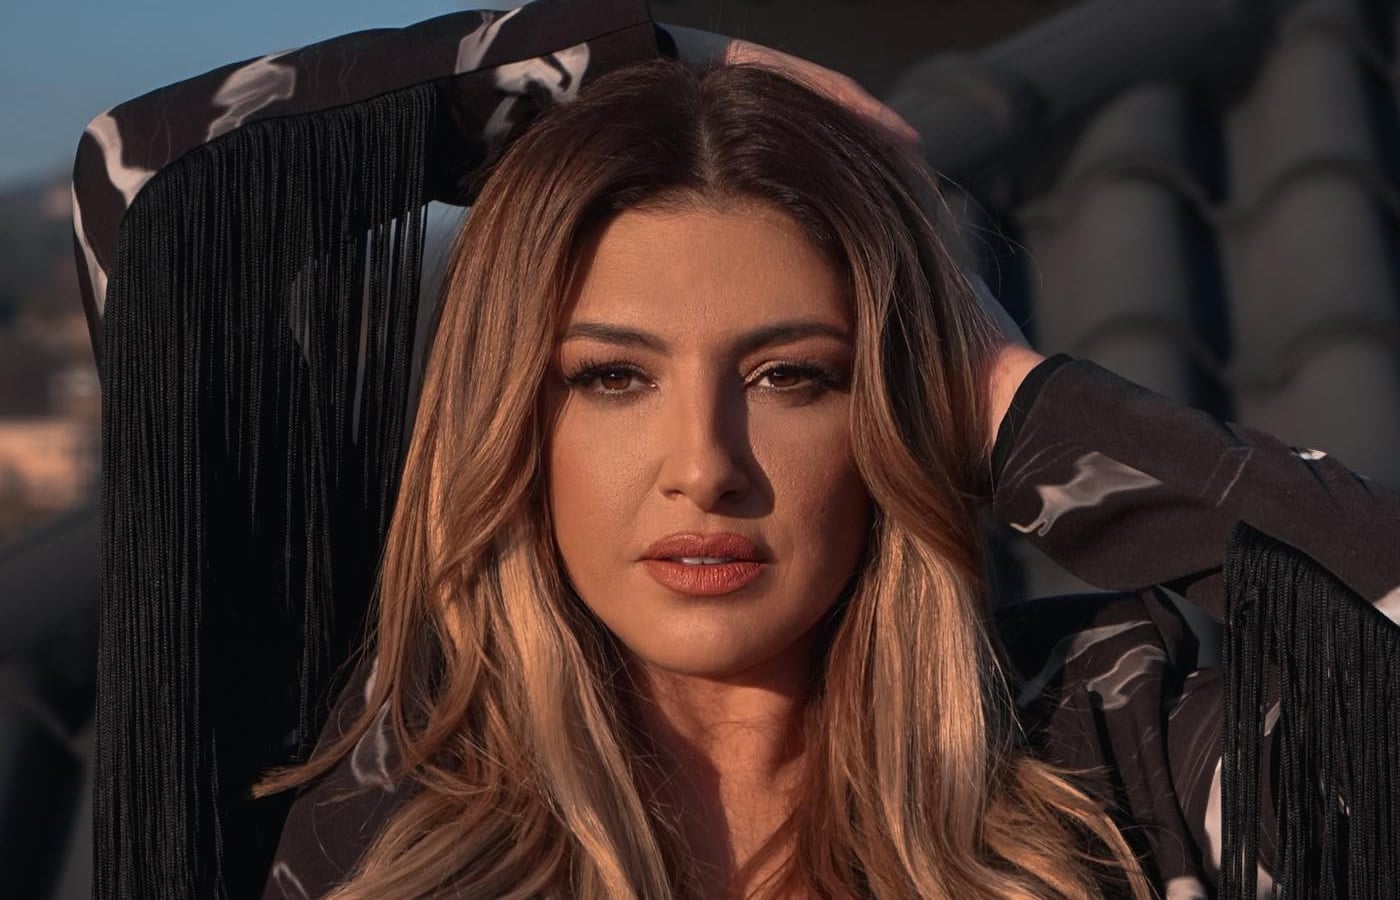 Για μία ακόμα φορά η number one τραγουδίστρια της Ελλάδας Έλενα Παπαρίζου κατάφερε με την εμφάνισή της να καθηλώσει τους θαμώνες